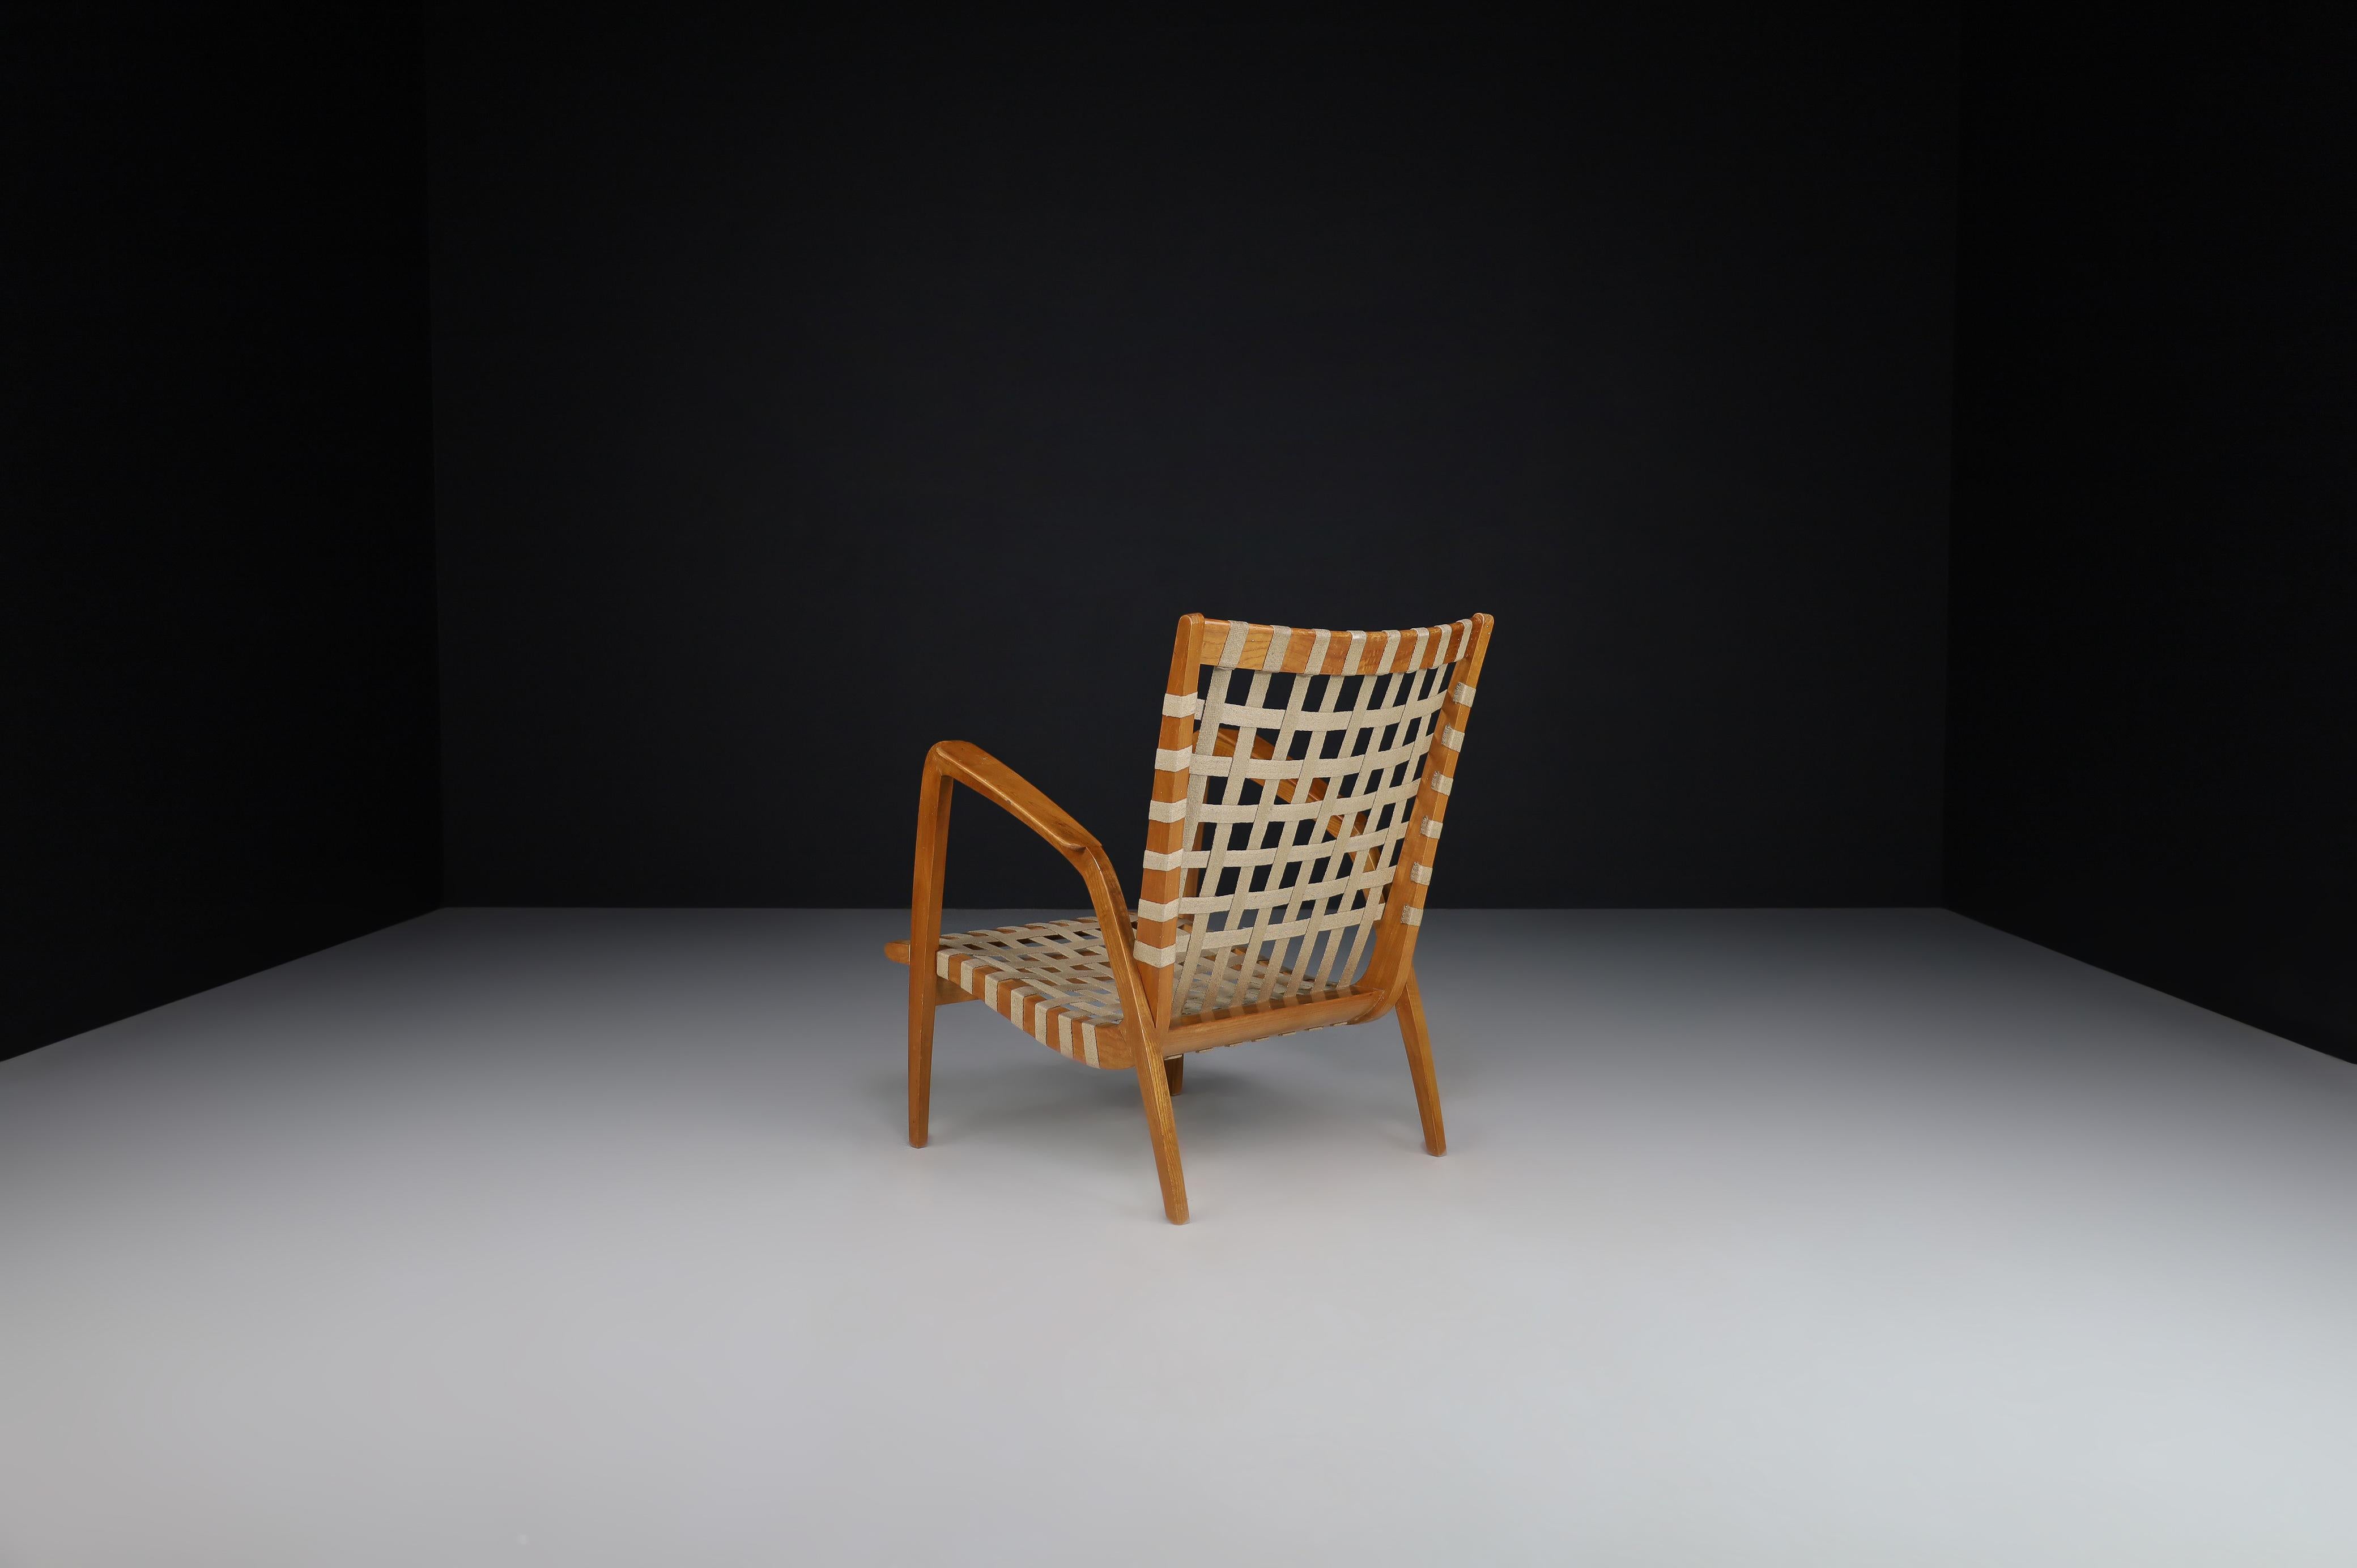 Fauteuil courbé Jan Vanek en chêne et sangles en toile tissée, Praque 1940s 

L'architecte tchèque Jan Vanek, contemporain de Jindrich Halabala, a conçu ce fauteuil incurvé dans les années 1940. Cette chaise est originellement tapissée de sangles